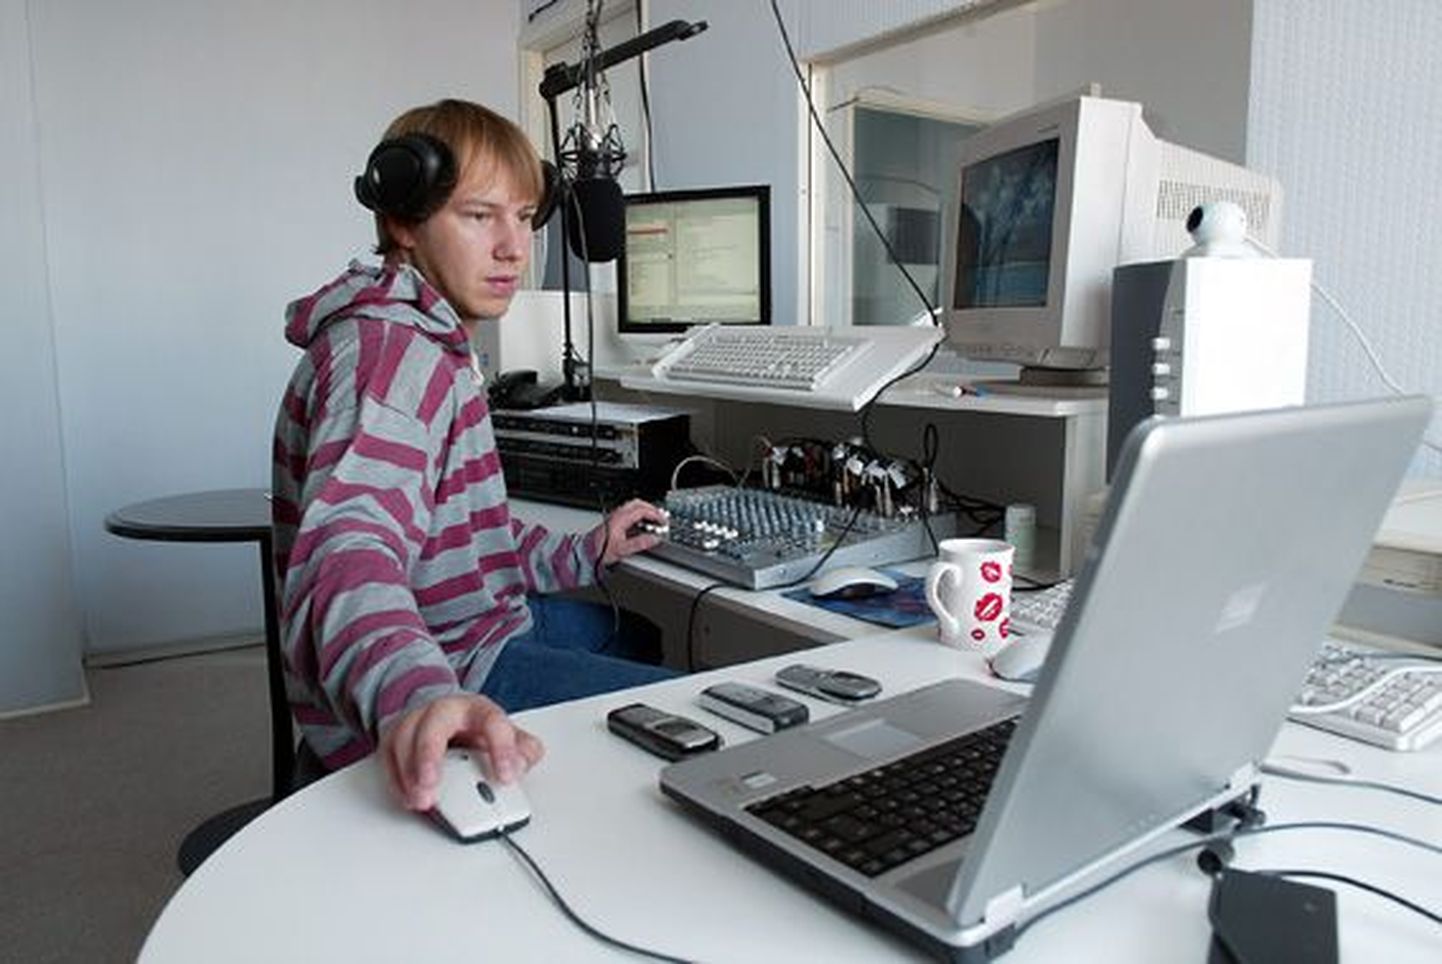 Raadio Viru kauane programmijuht Tanel Raudla lahkus raadiost suuremate segaduste alguses 2007. aastal.